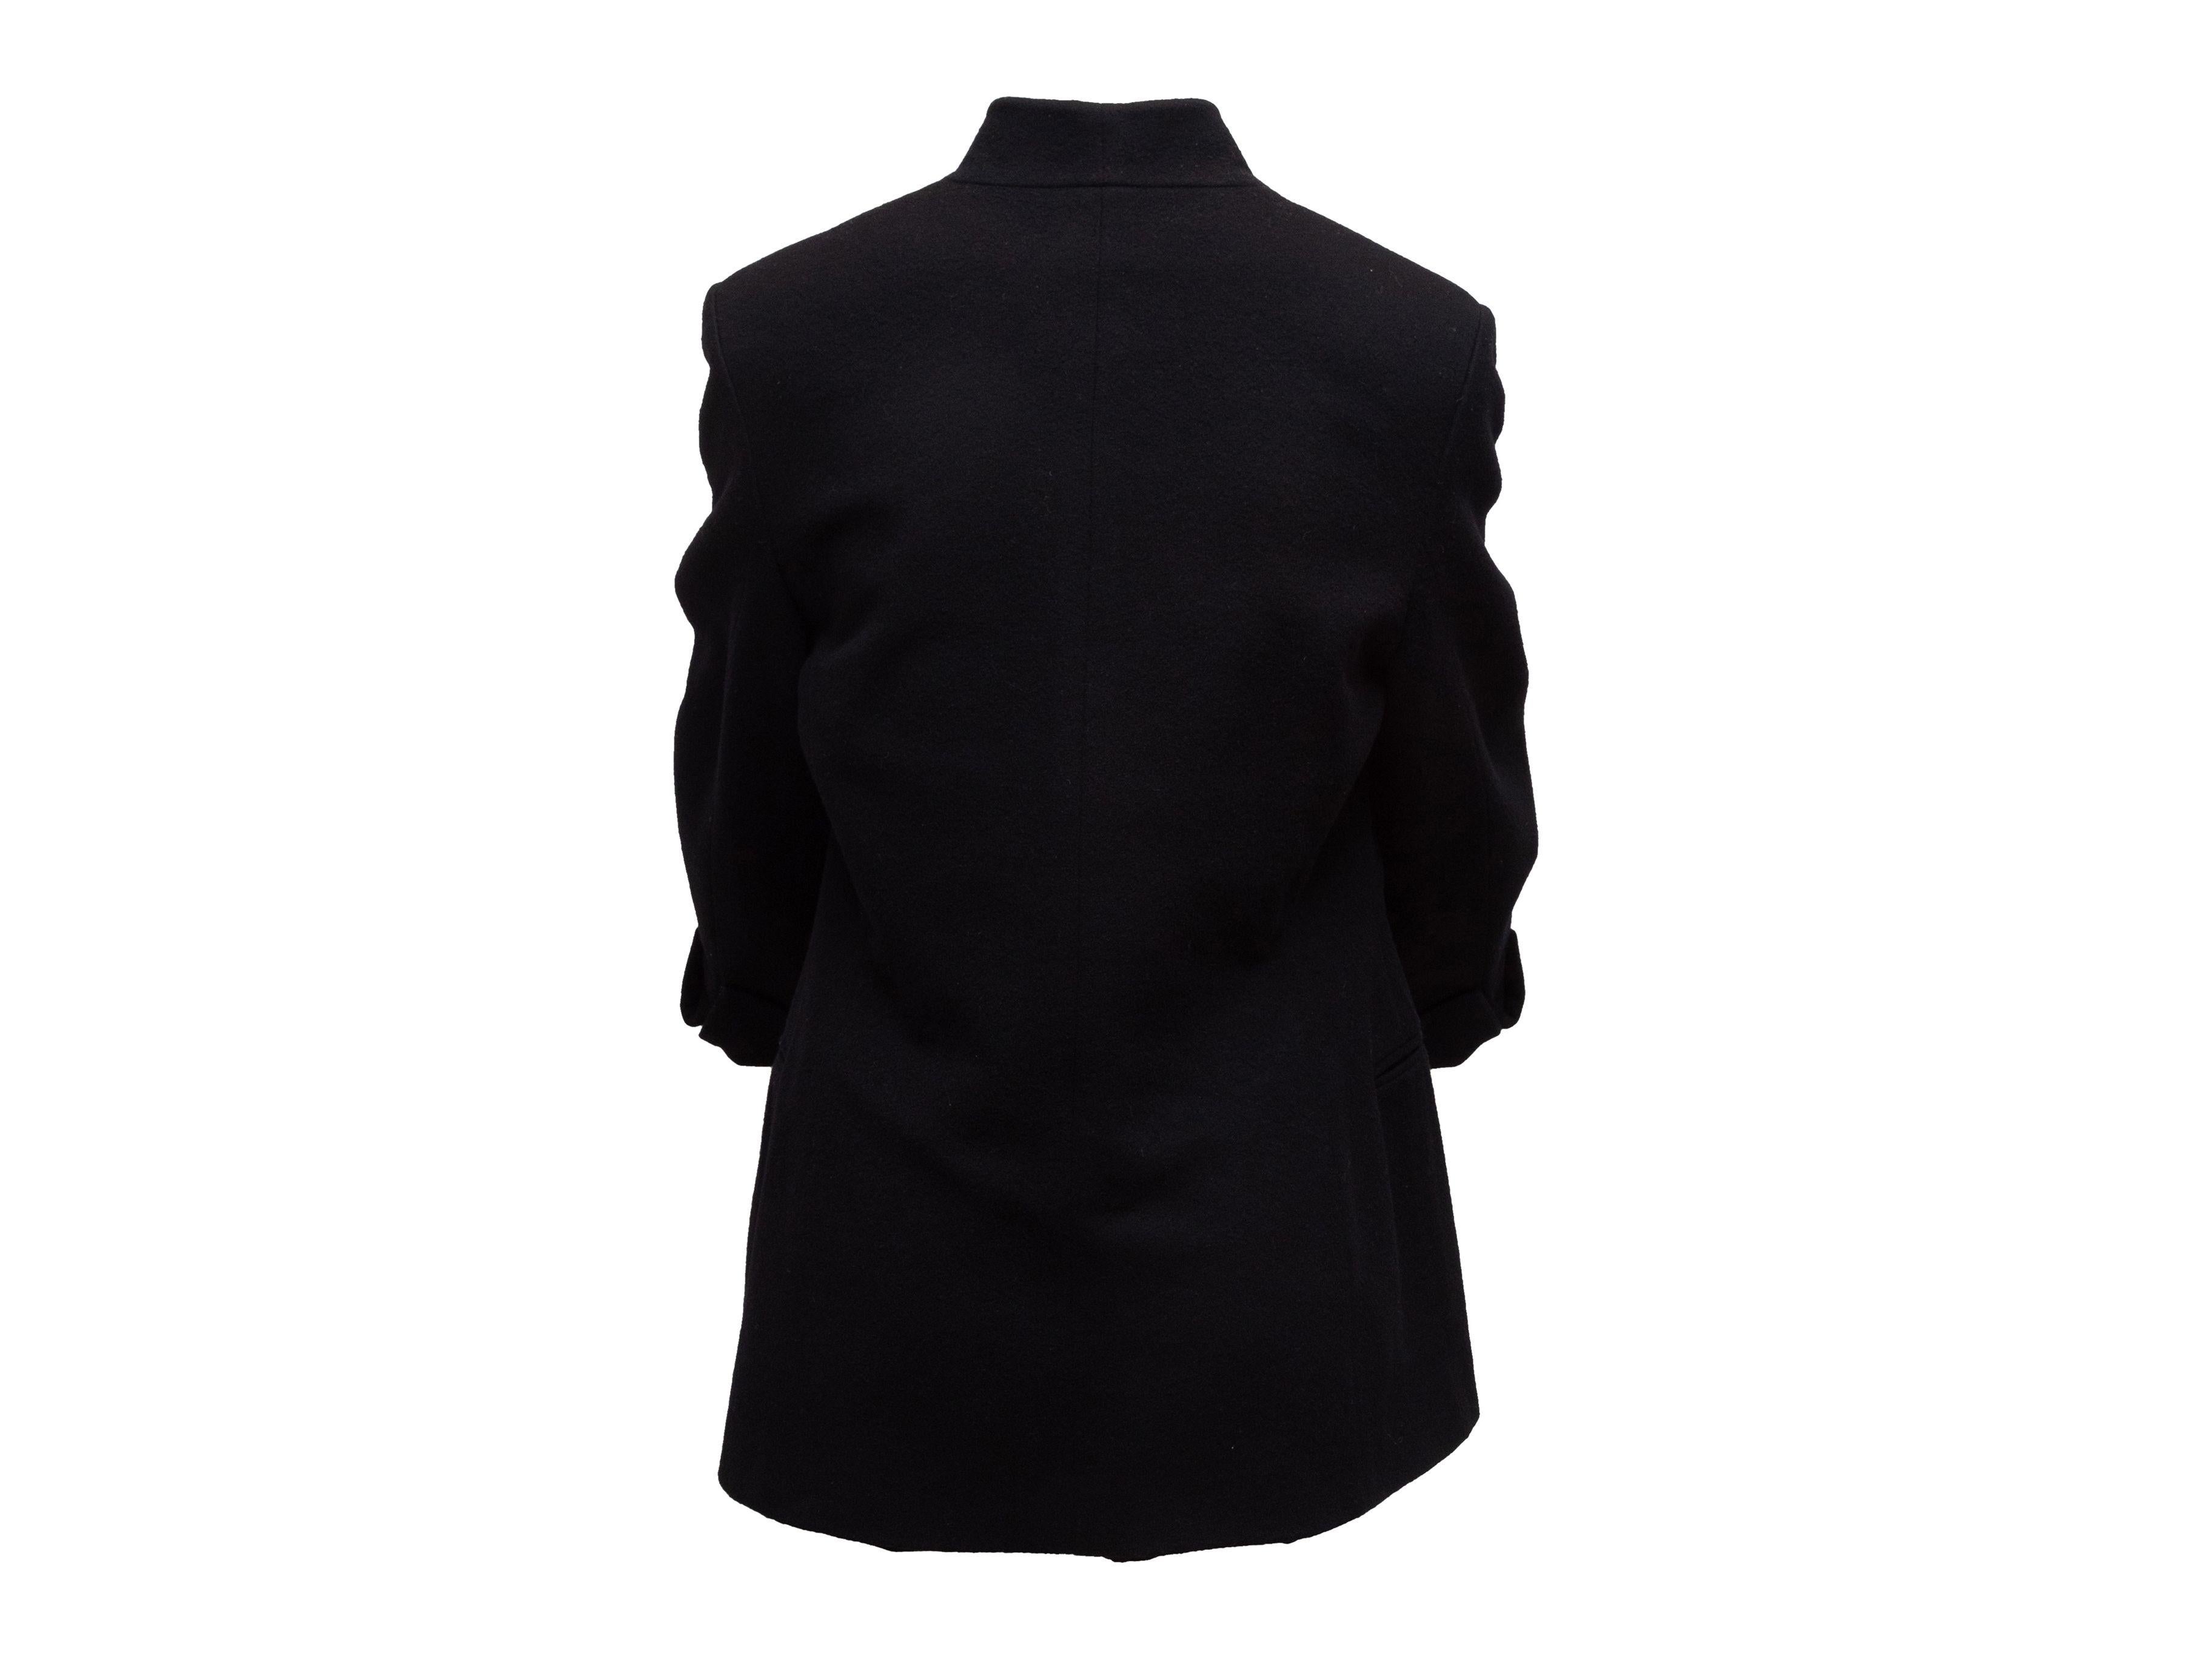 Gianfranco Ferre Vintage Black Wool Jacket 2